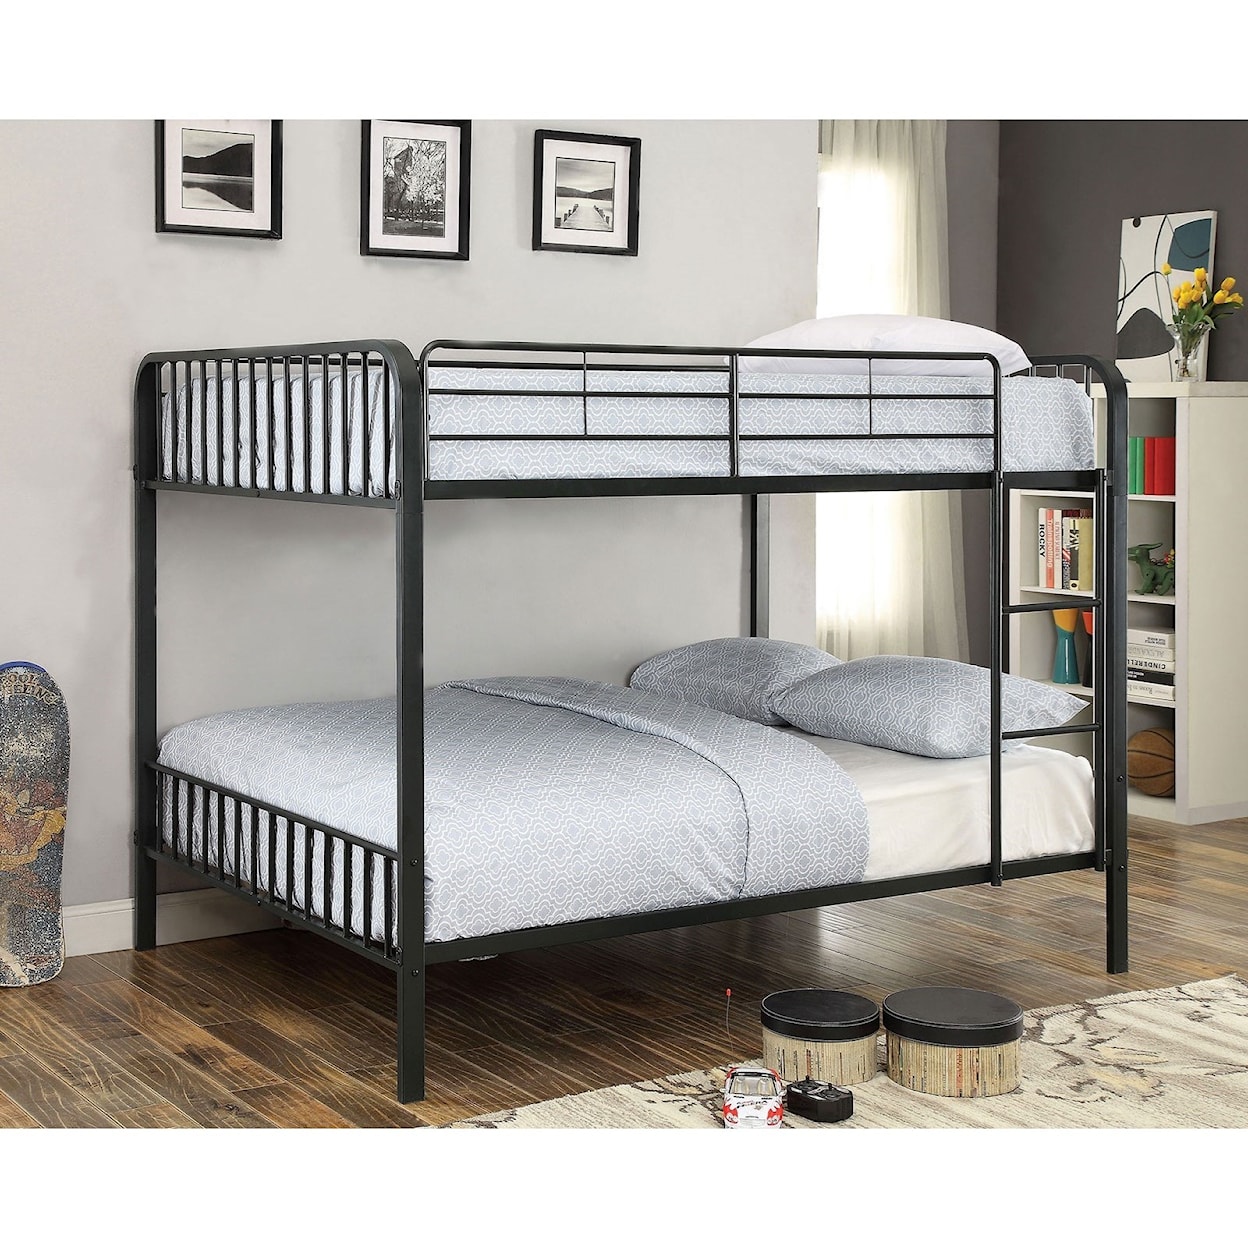 Furniture of America Clement Metal Full/Full Bunk Bed